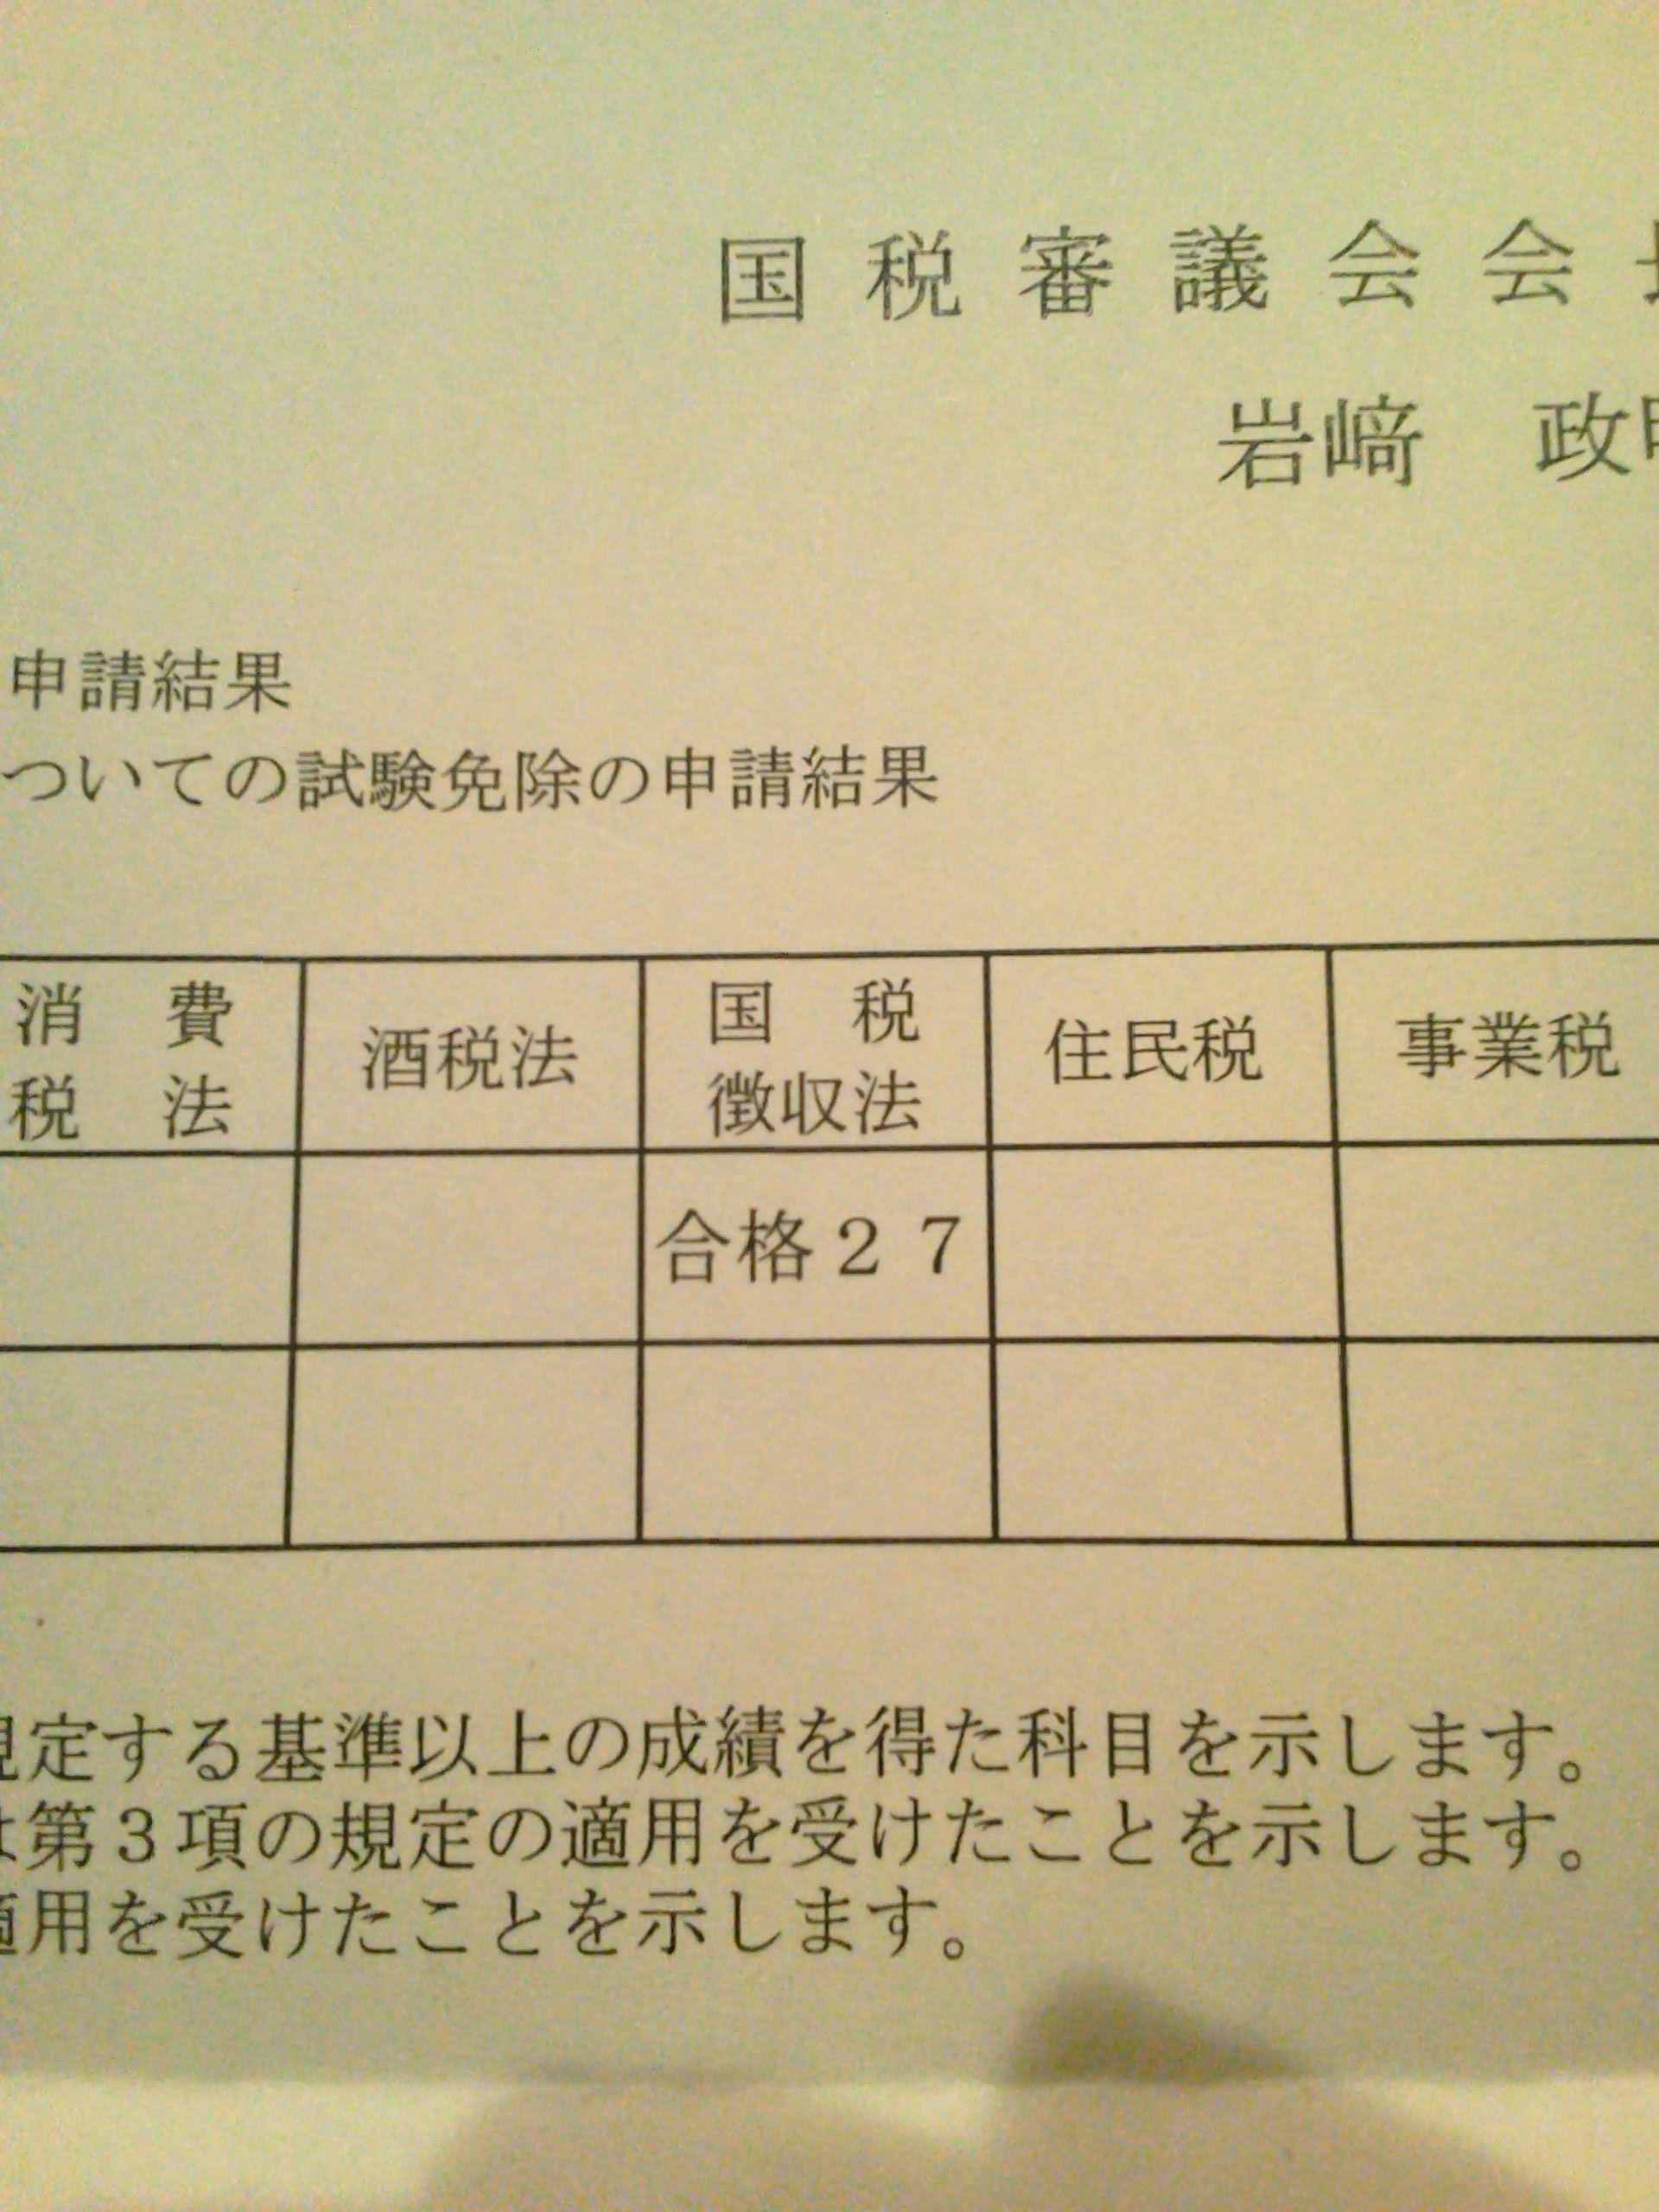 国税徴収法 - JapaneseClass.jp